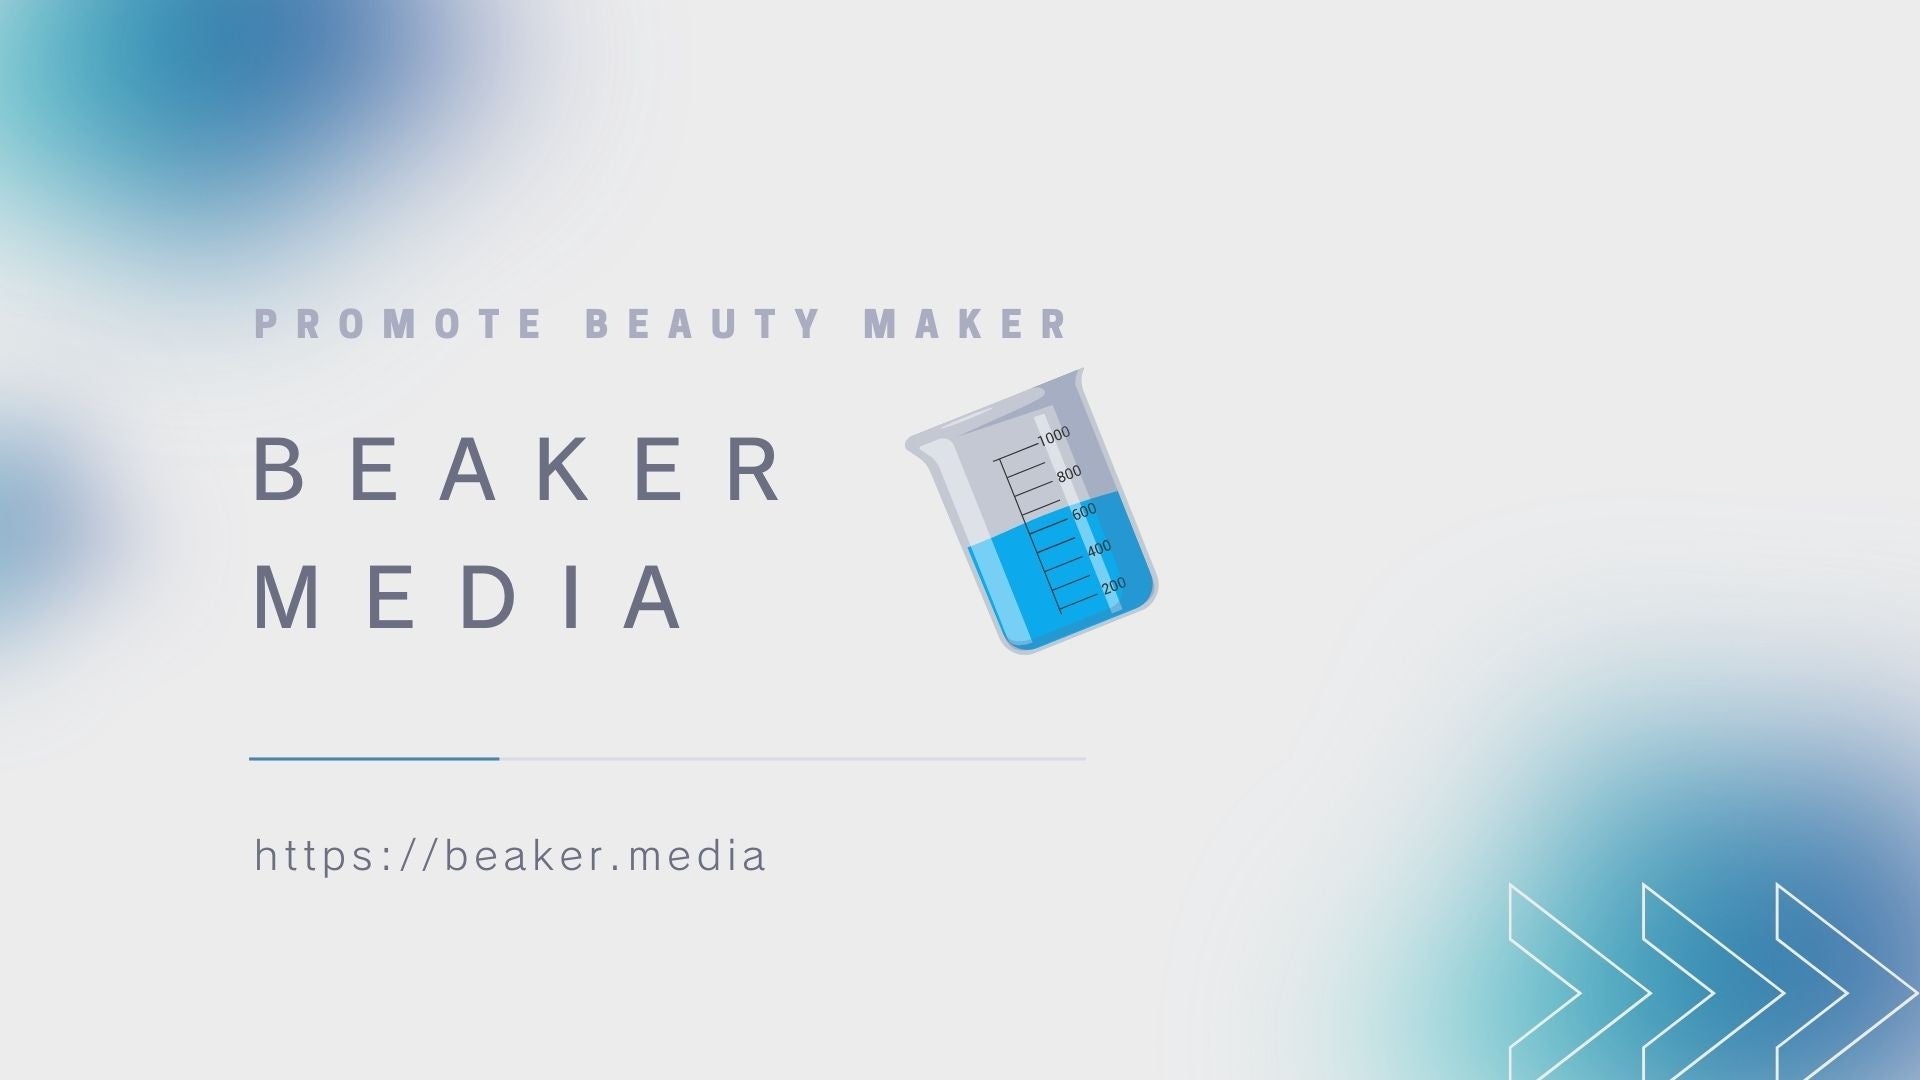 株式会社Cogane studio 化粧品、健康食品業界のBtoB向けメディアサイトBeaker mediaを立ち上げ